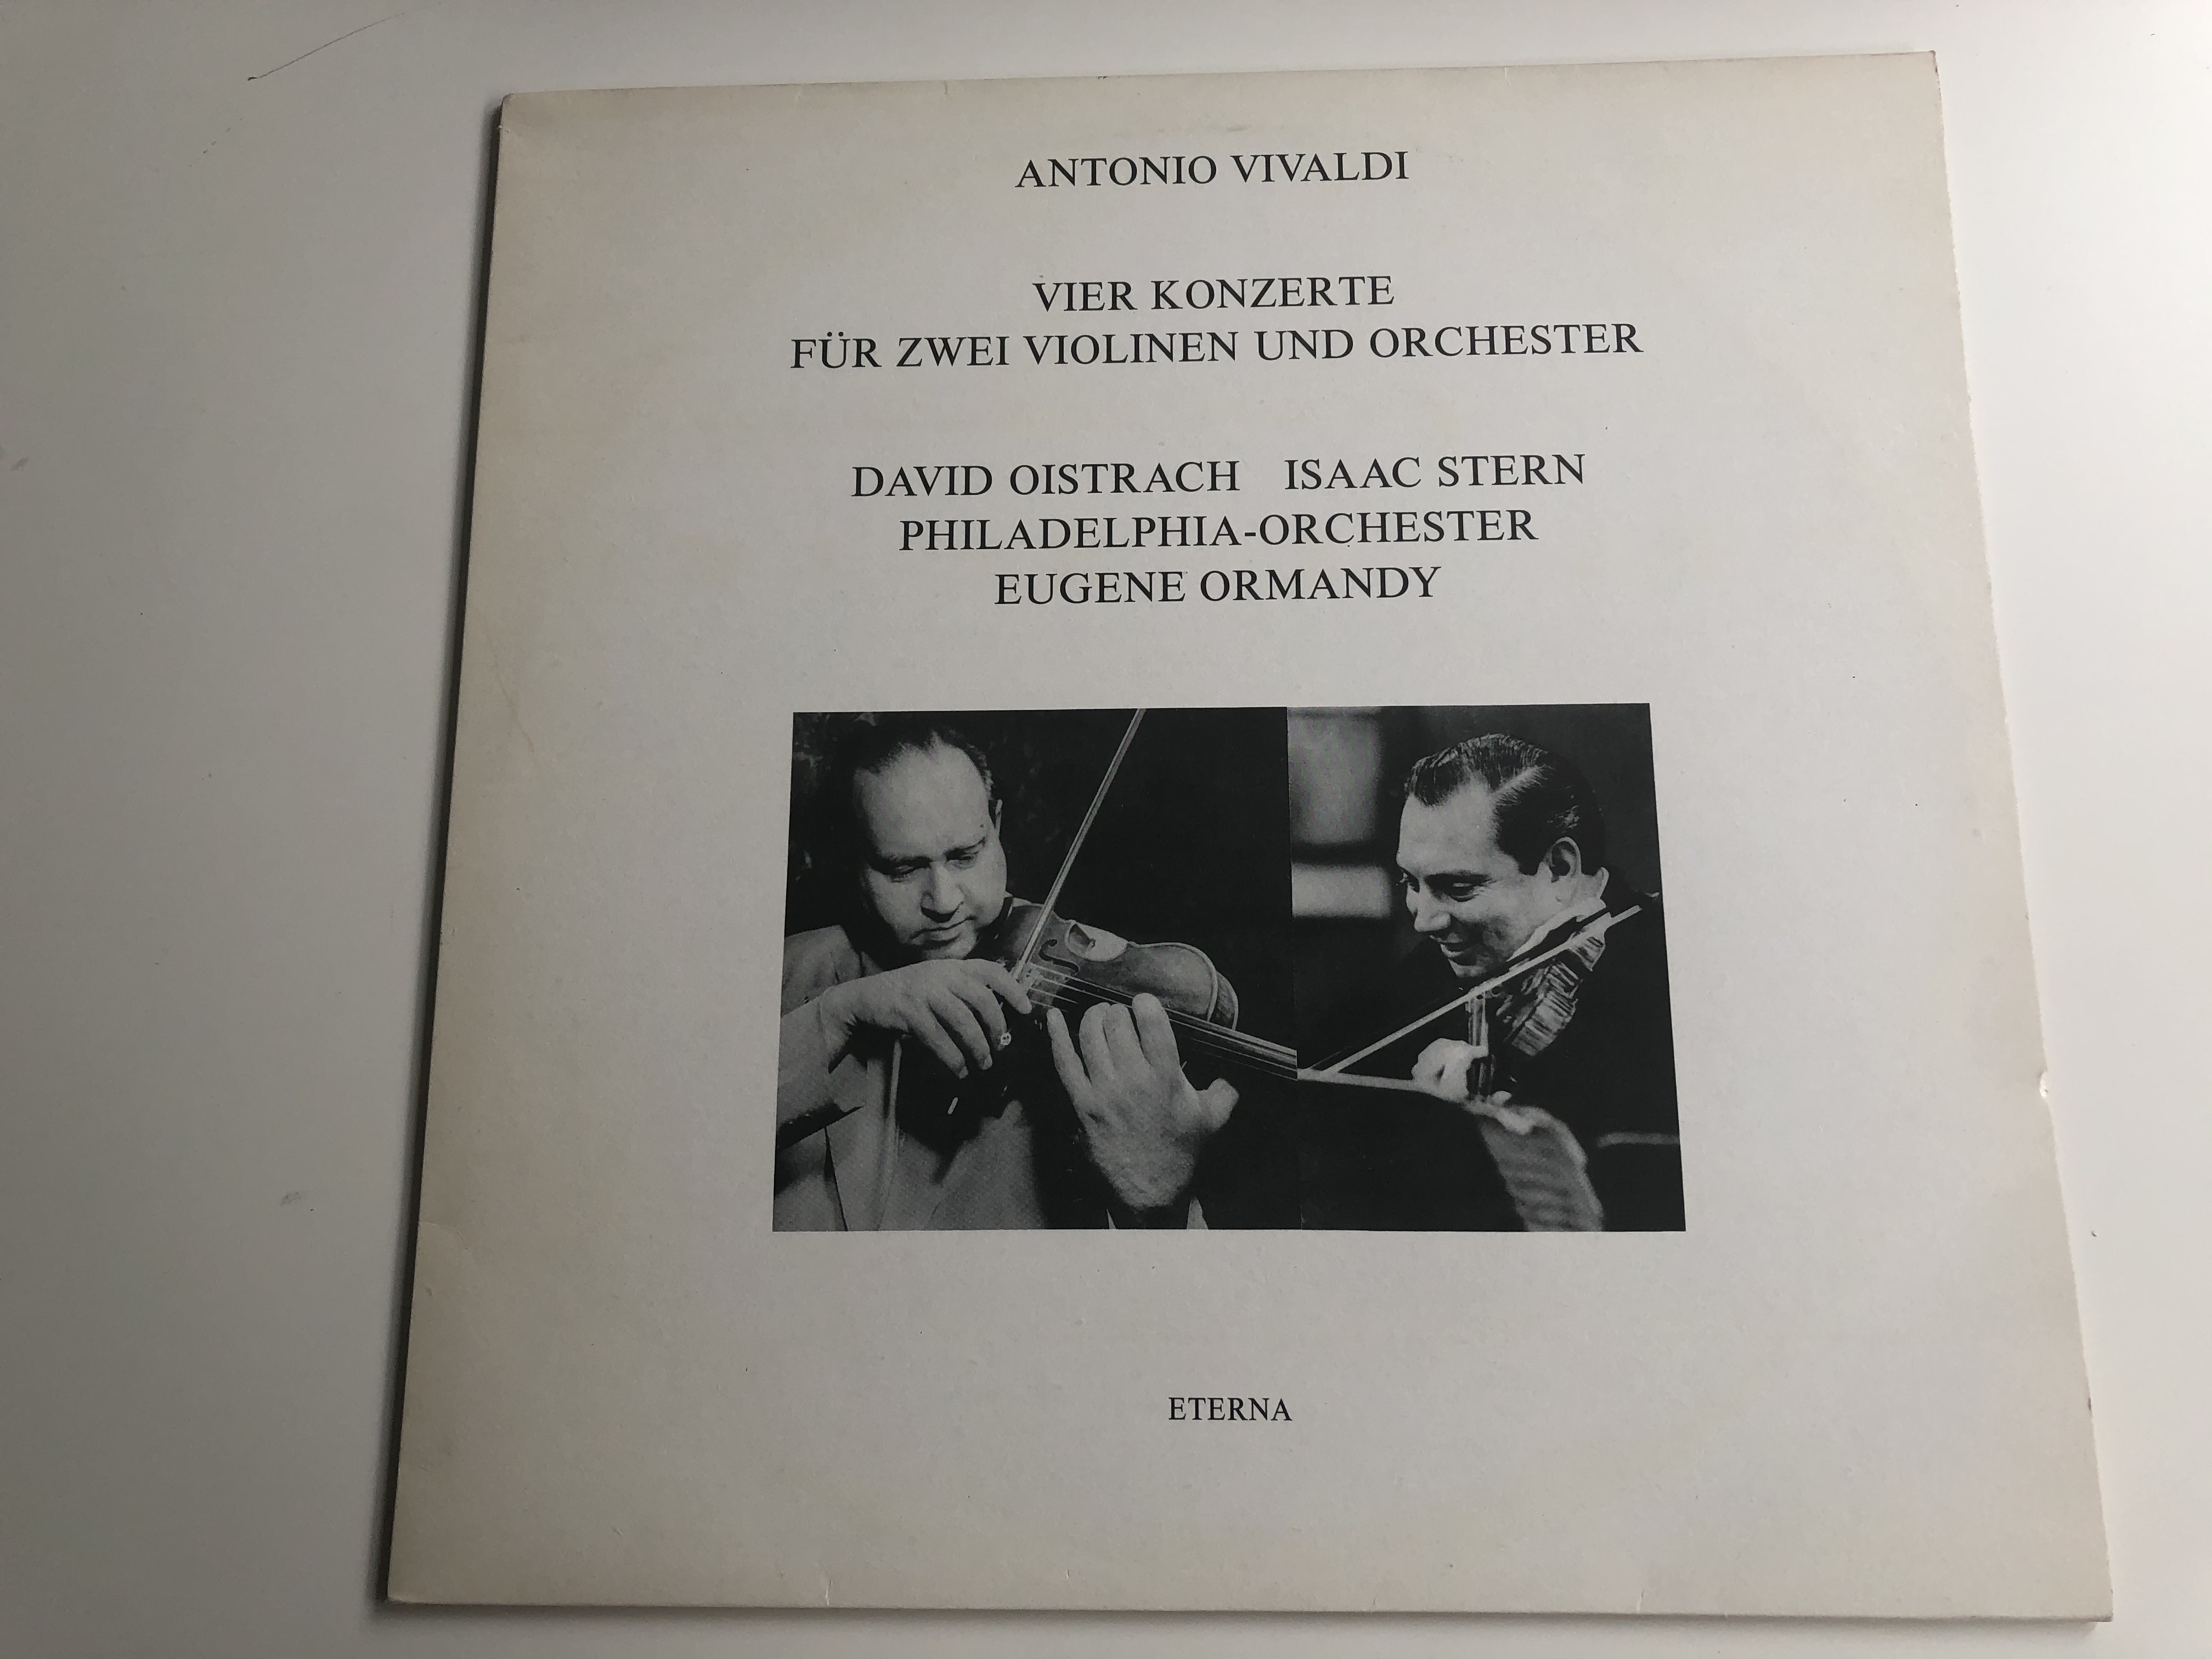 antonio-vivaldi-vier-konzerte-f-r-zwei-violinen-und-orchester-david-oistrach-isaac-stern-philadelphia-orchestra-eugene-ormandy-eterna-lp-stereo-825-612-1-.jpg